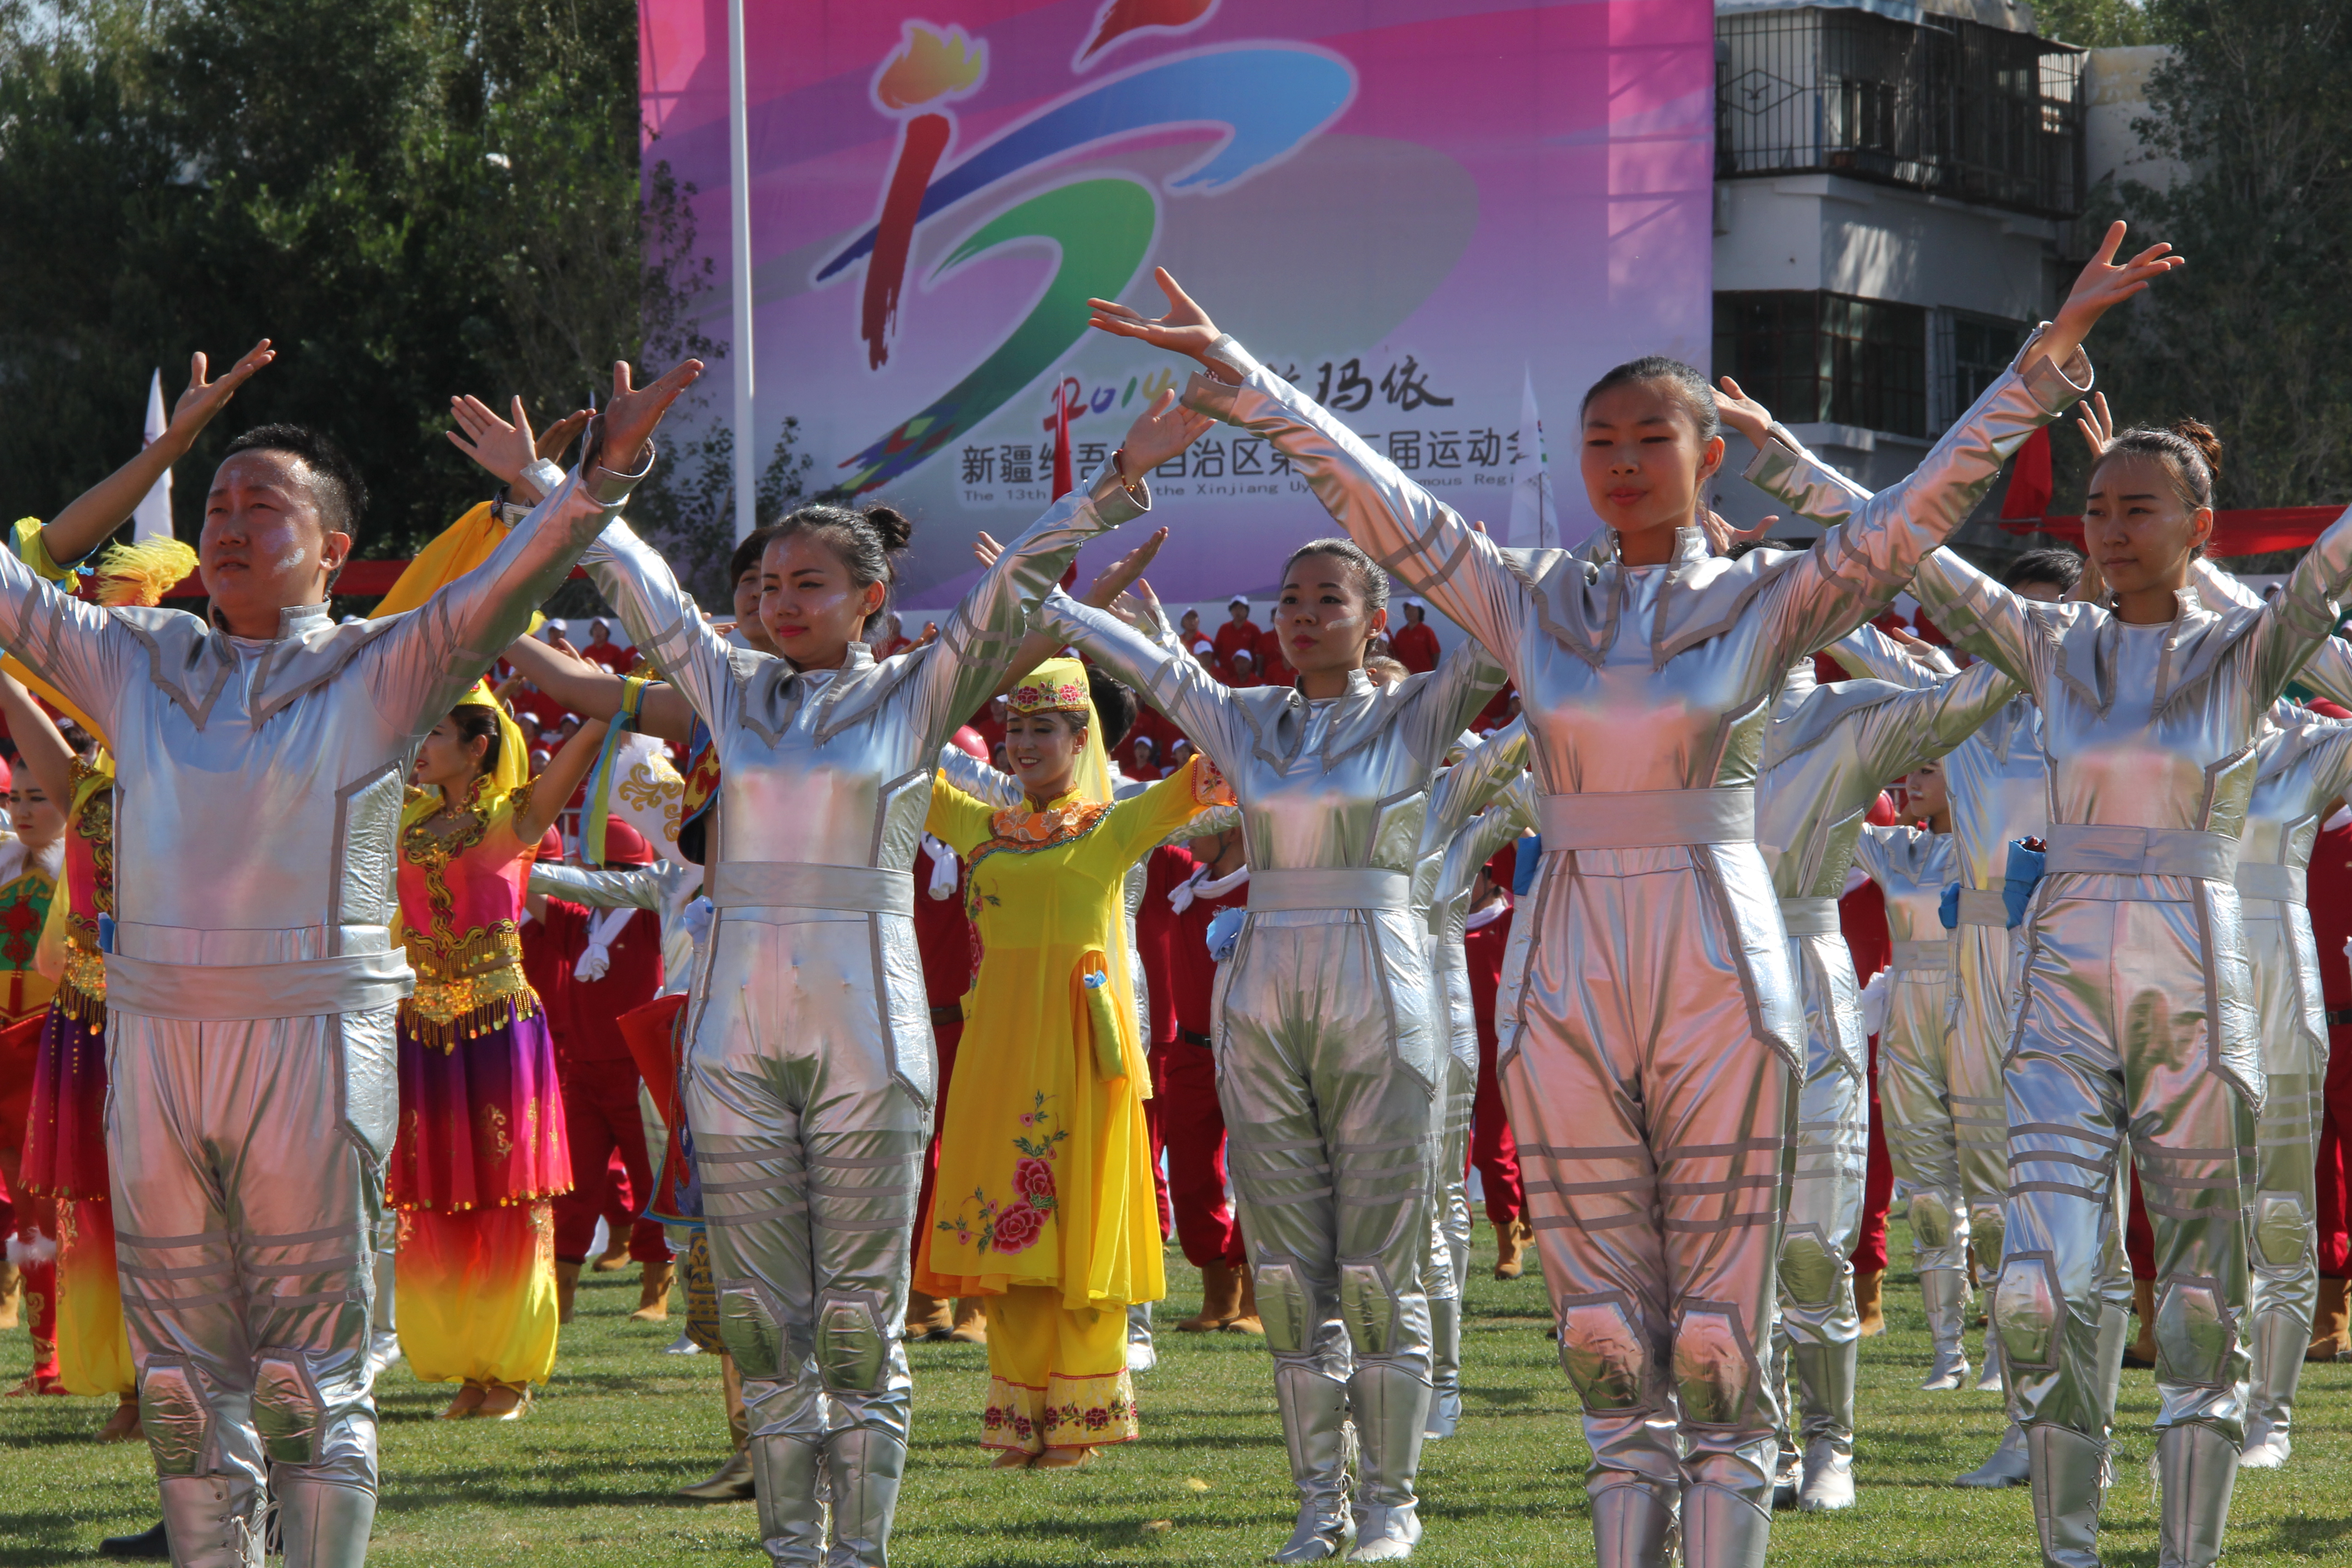 新疆维吾尔自治区第十三届运动会开幕式在克拉玛依市隆重举行